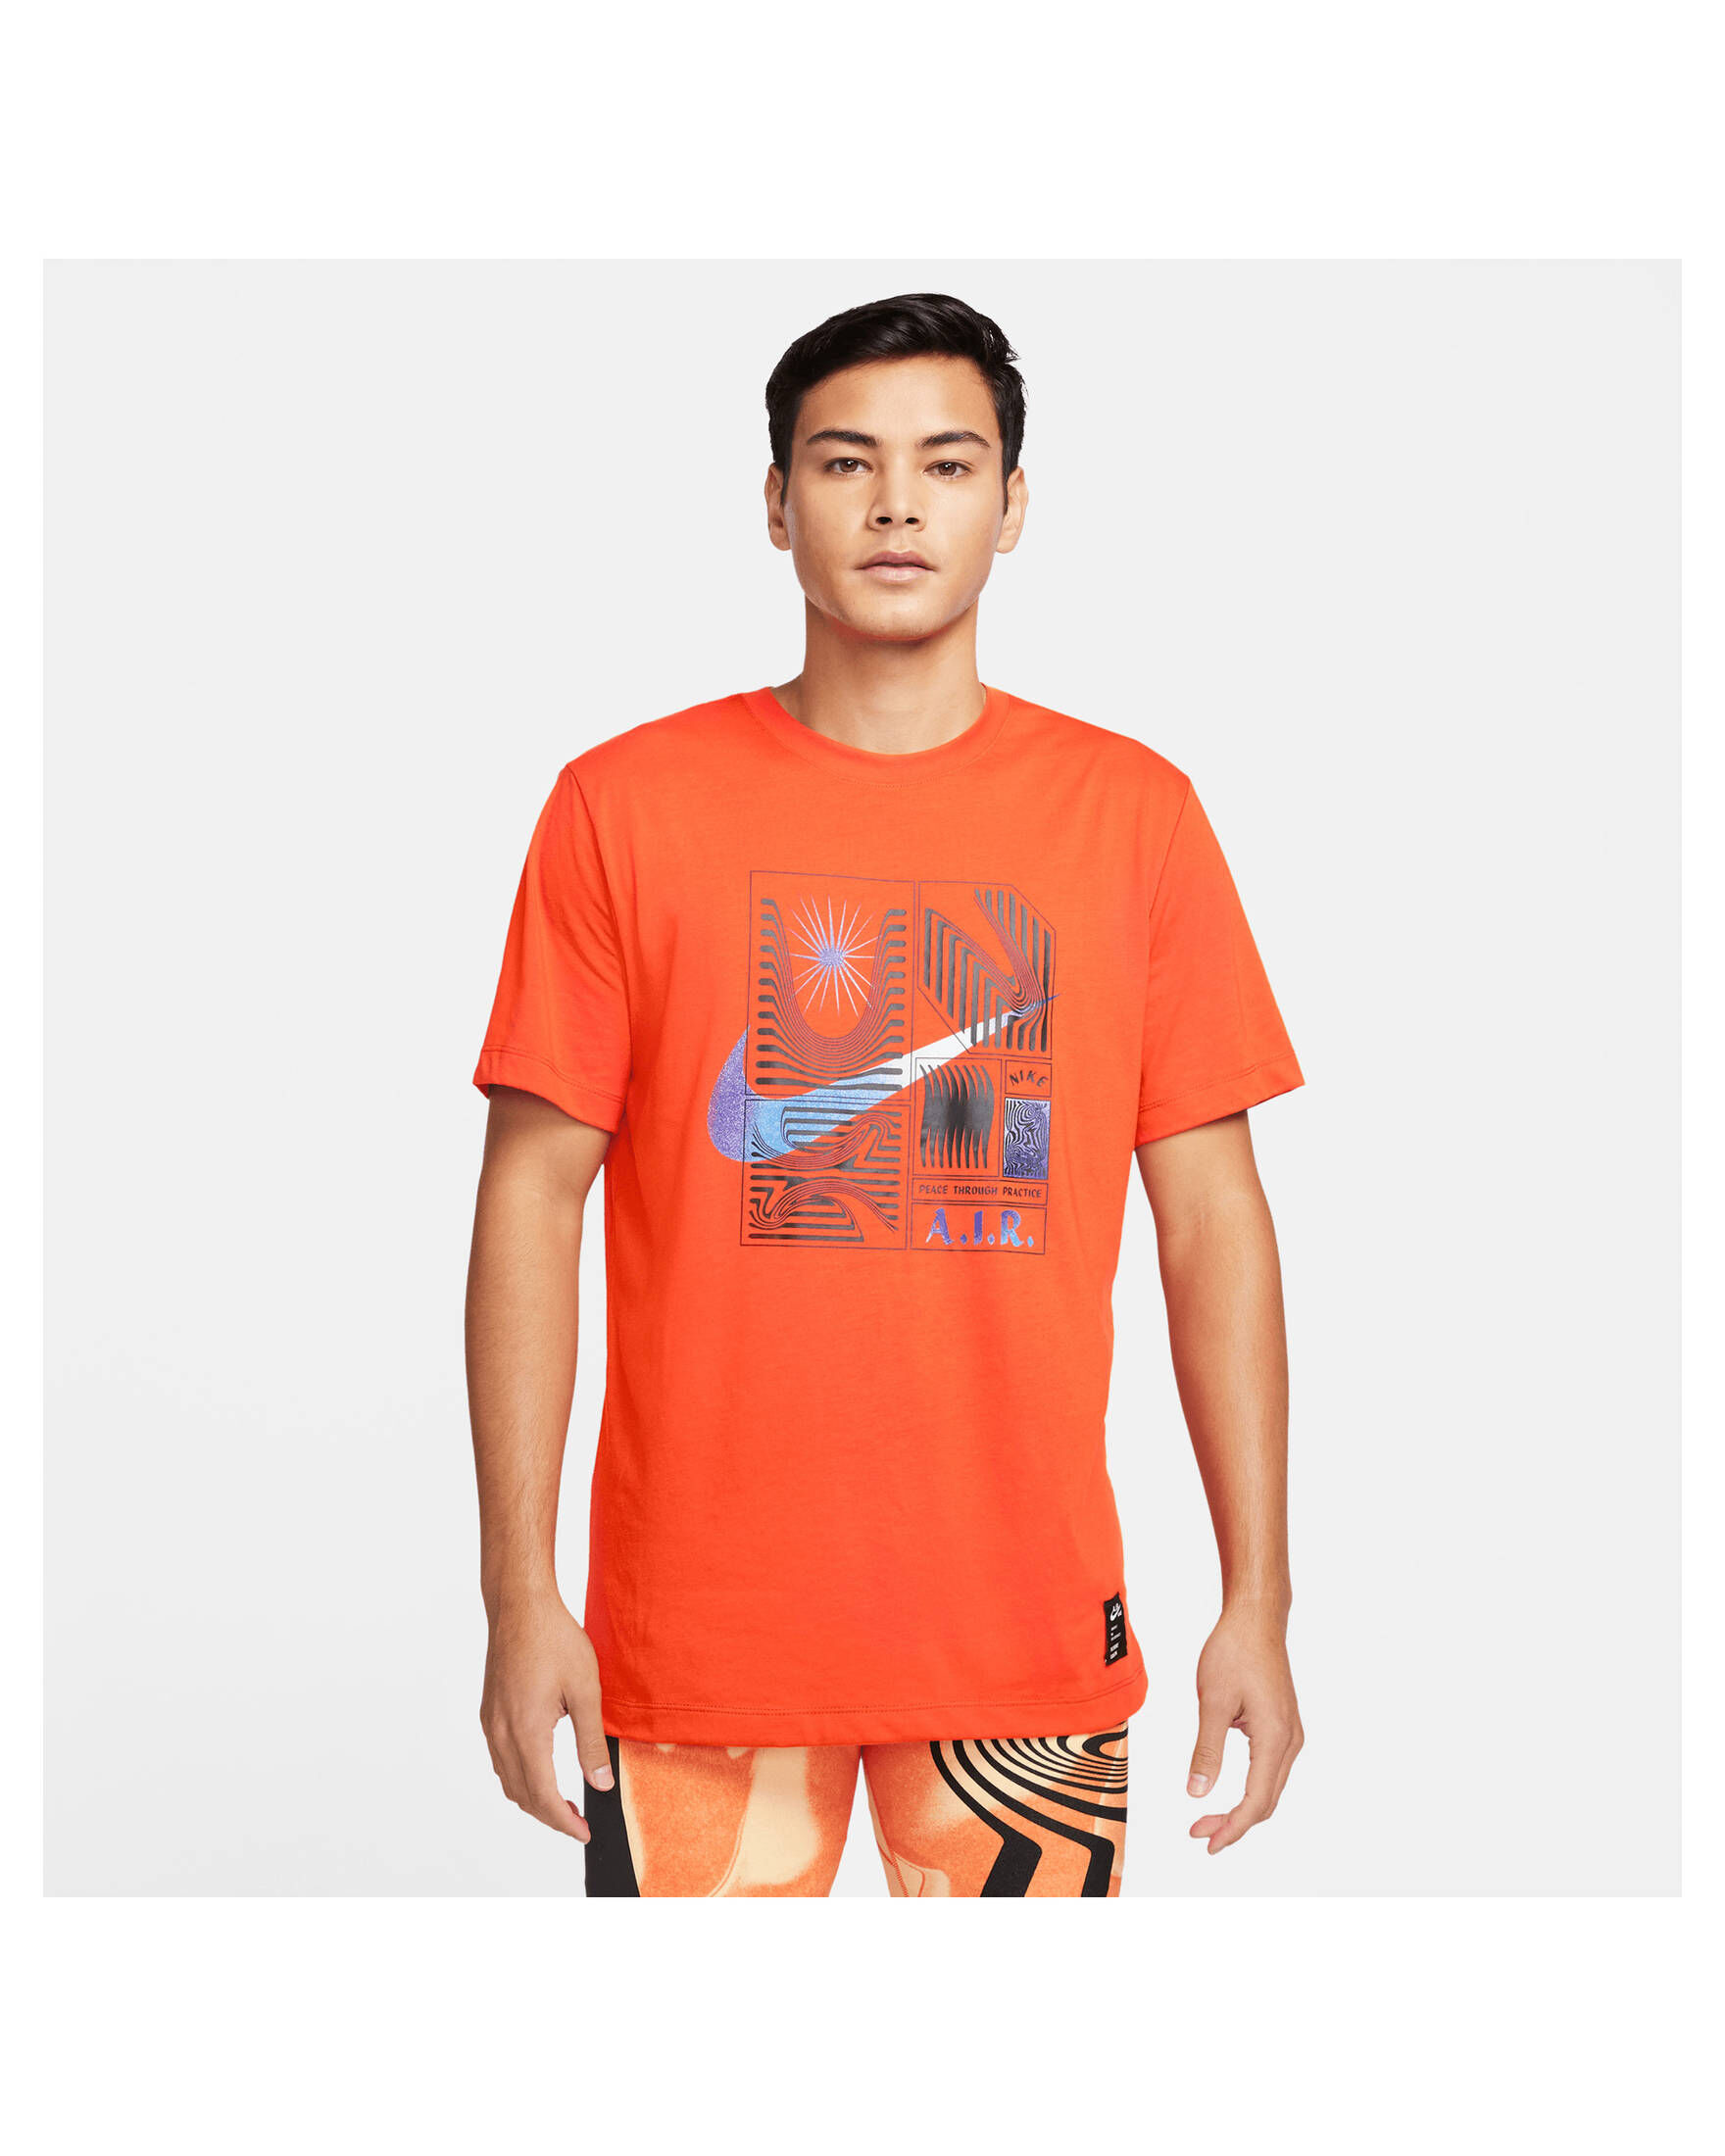 A.I.R. DRI-FIT engelhorn NIKE T-Shirt Nike YOGA Herren | kaufen